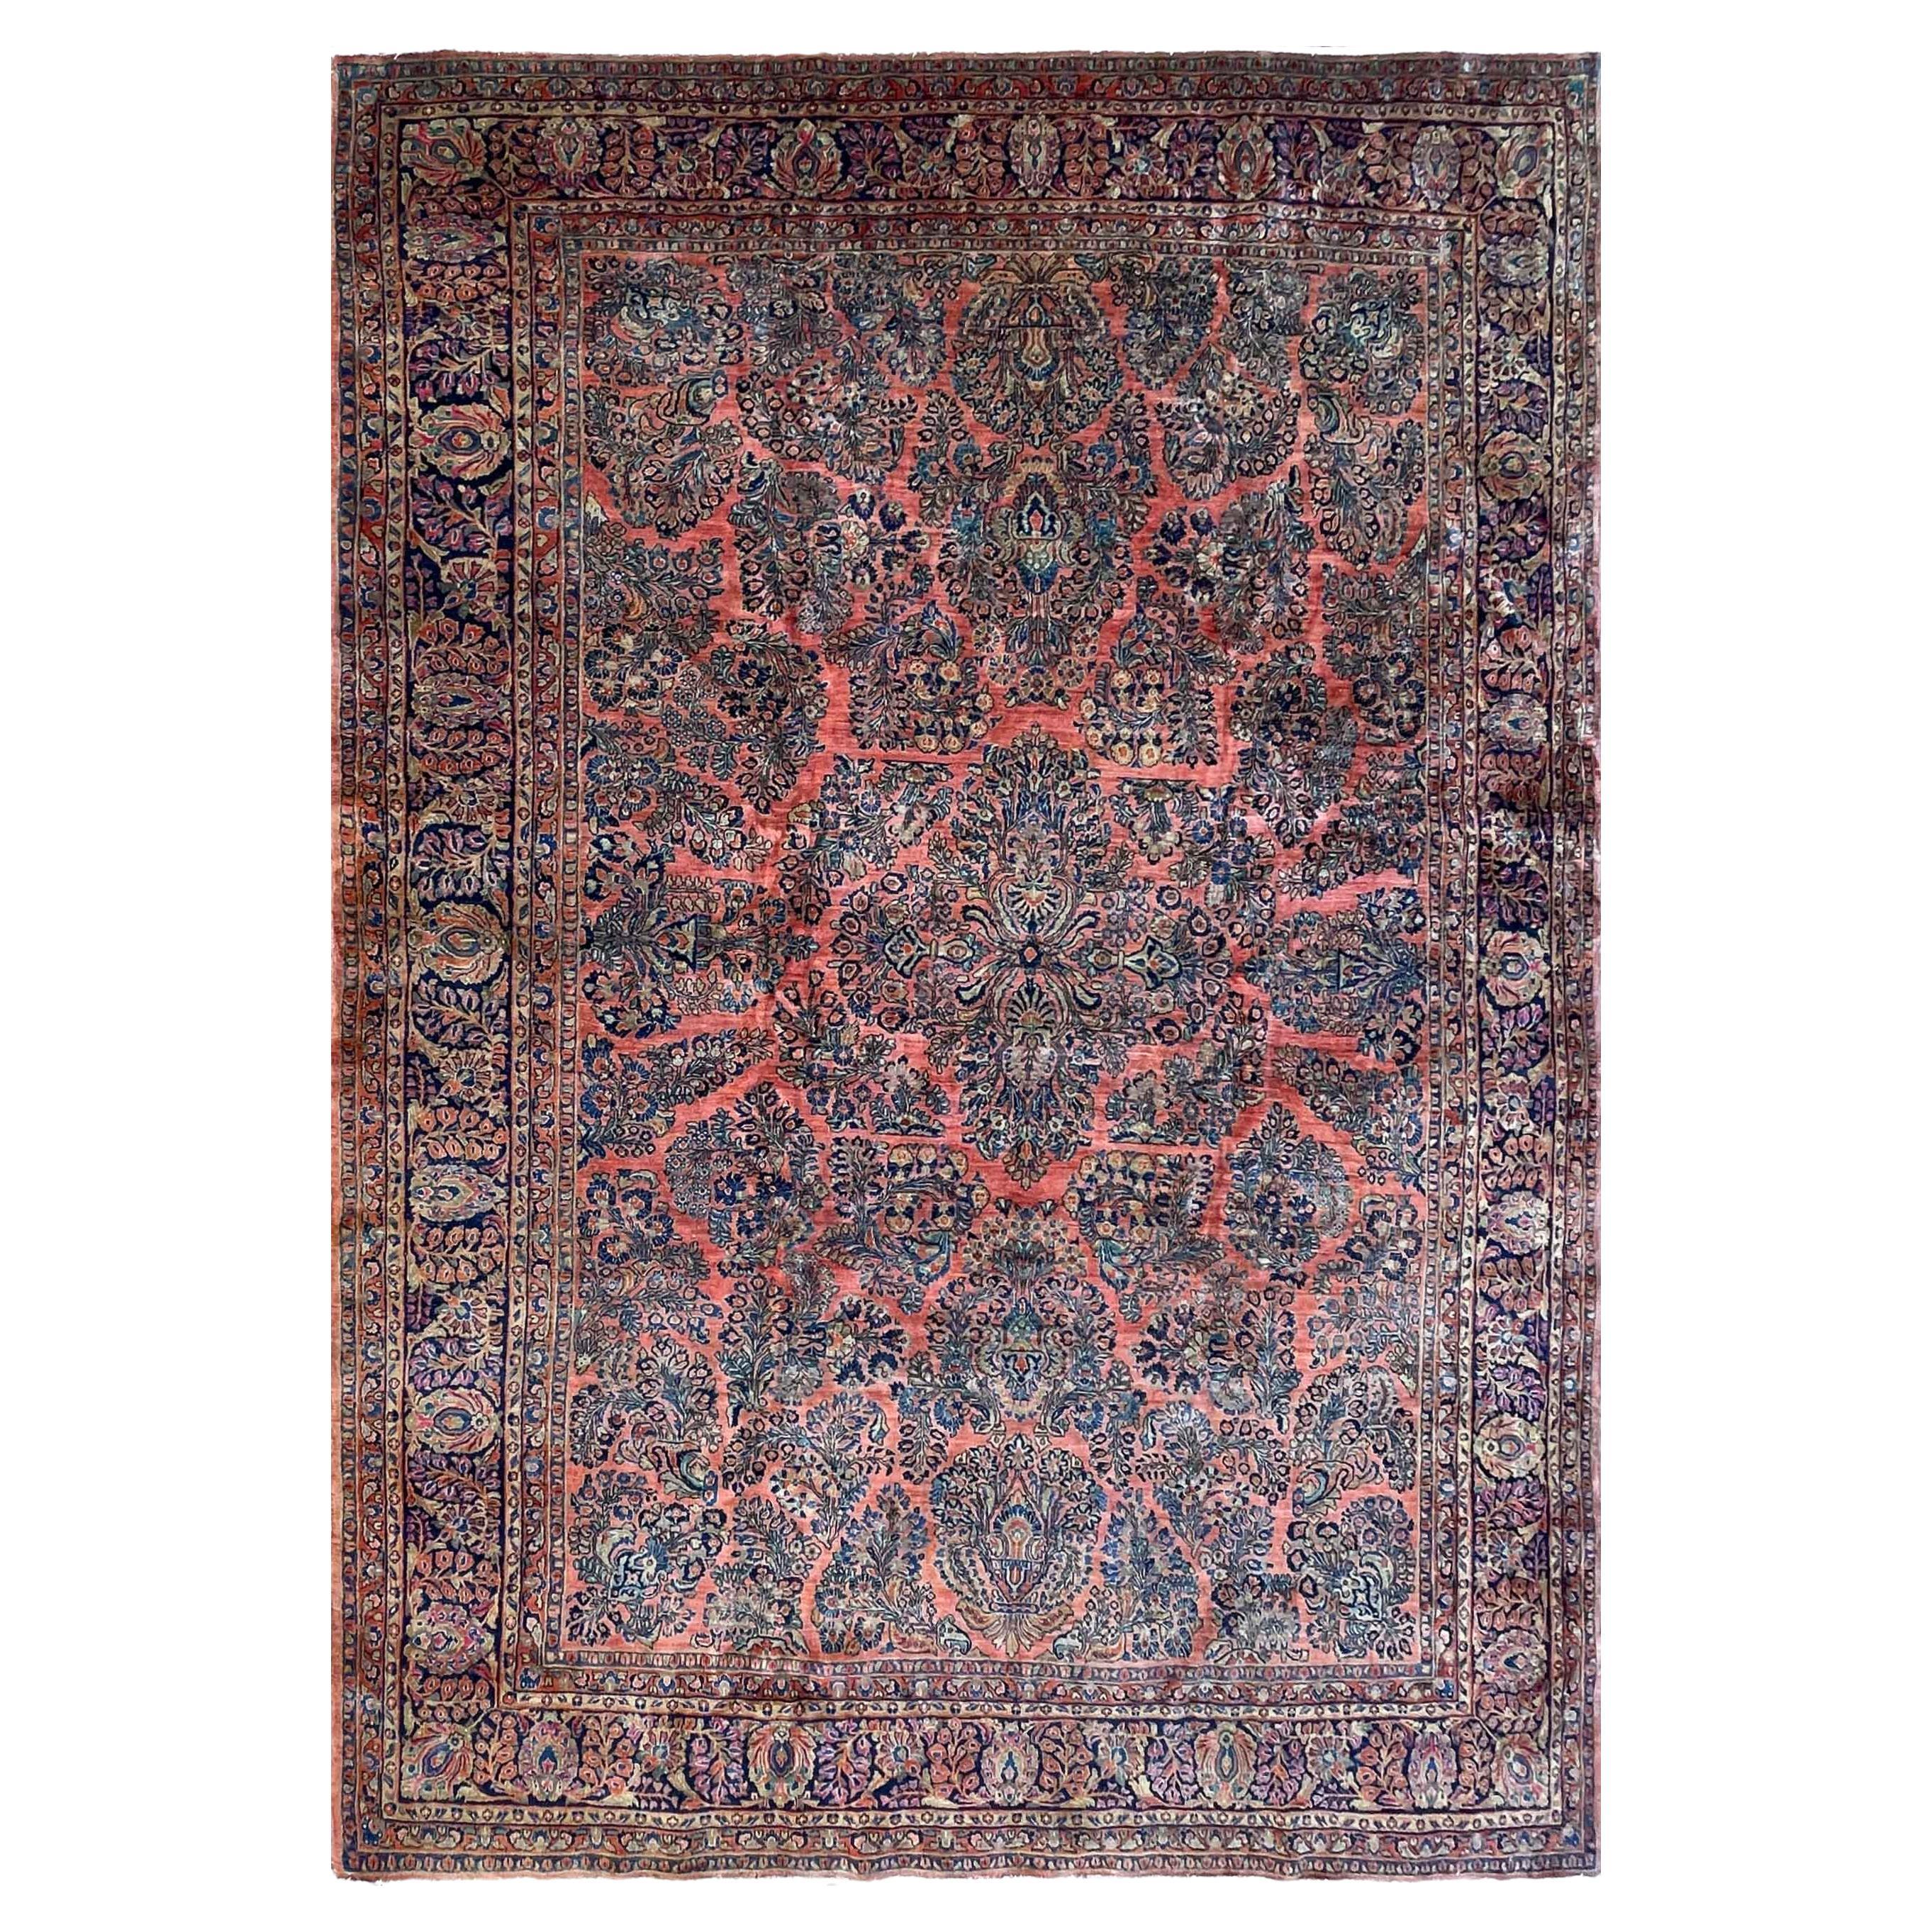 Antique Persian Sarouk Carpet, garden design